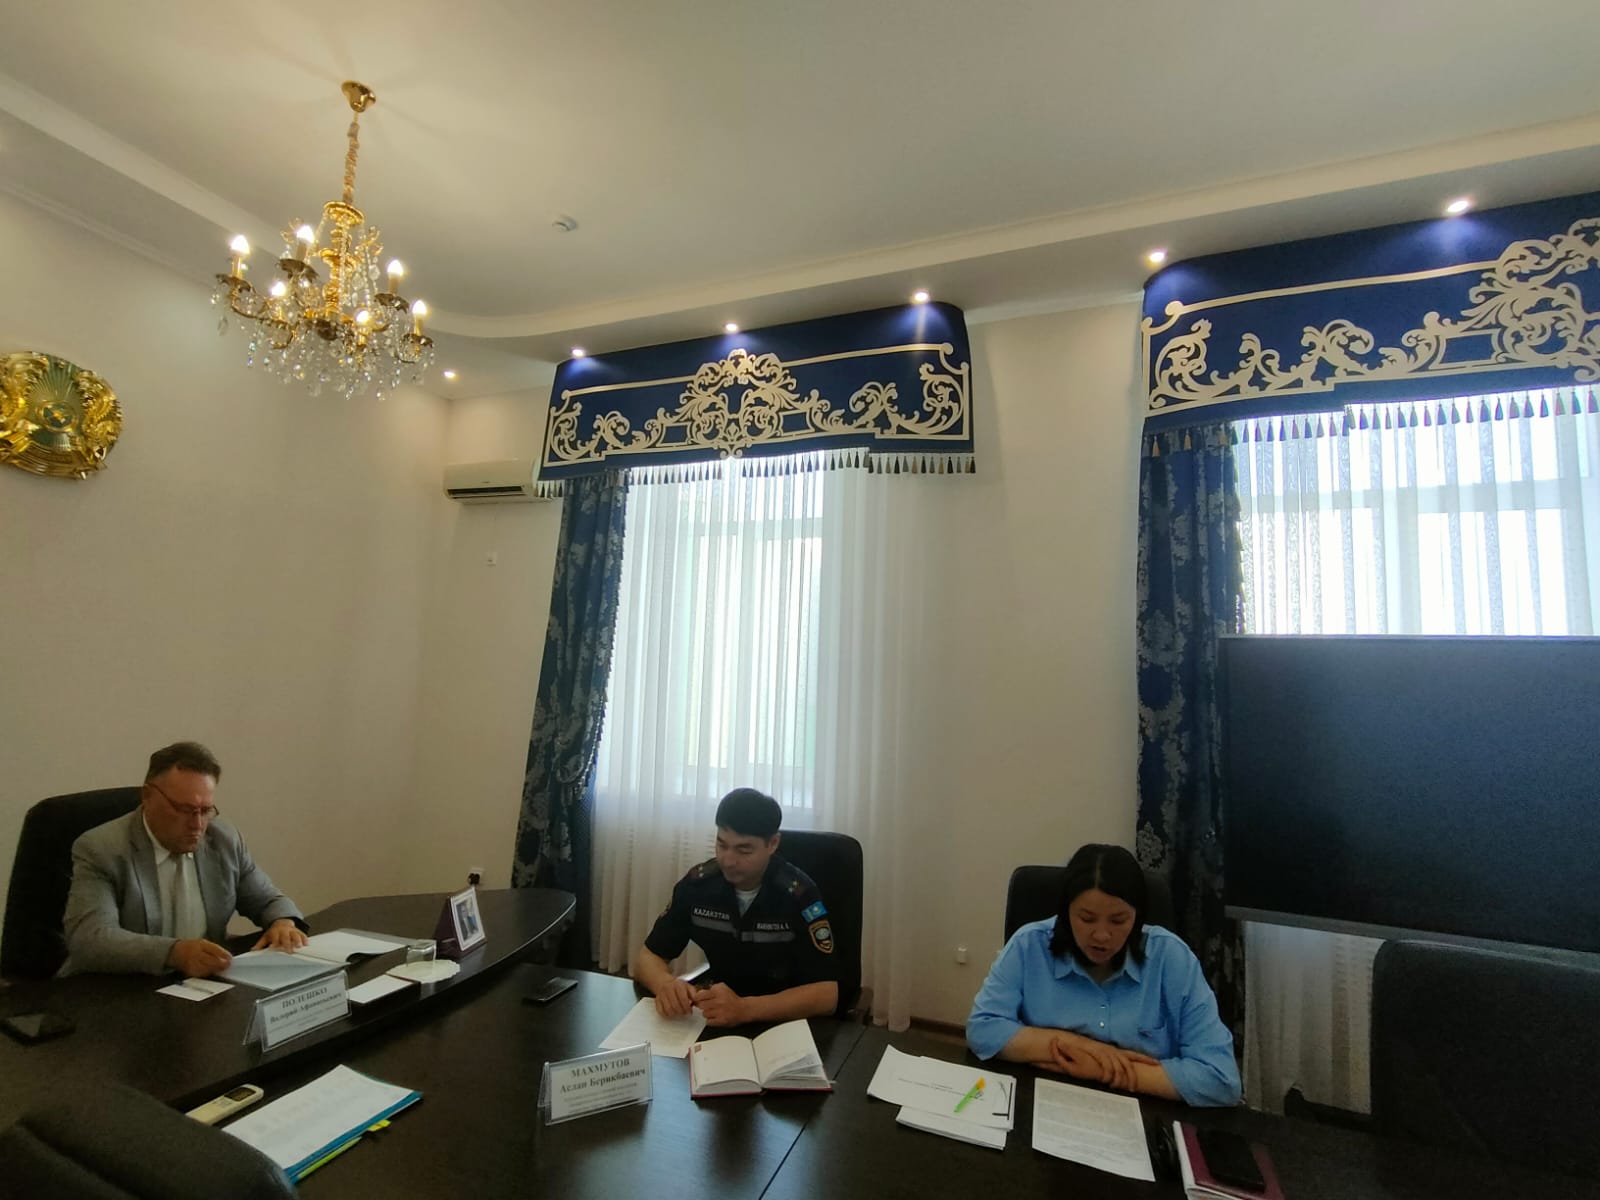 2 июня текущего года состоялось очередное заседание Общественного совета города Костаная.